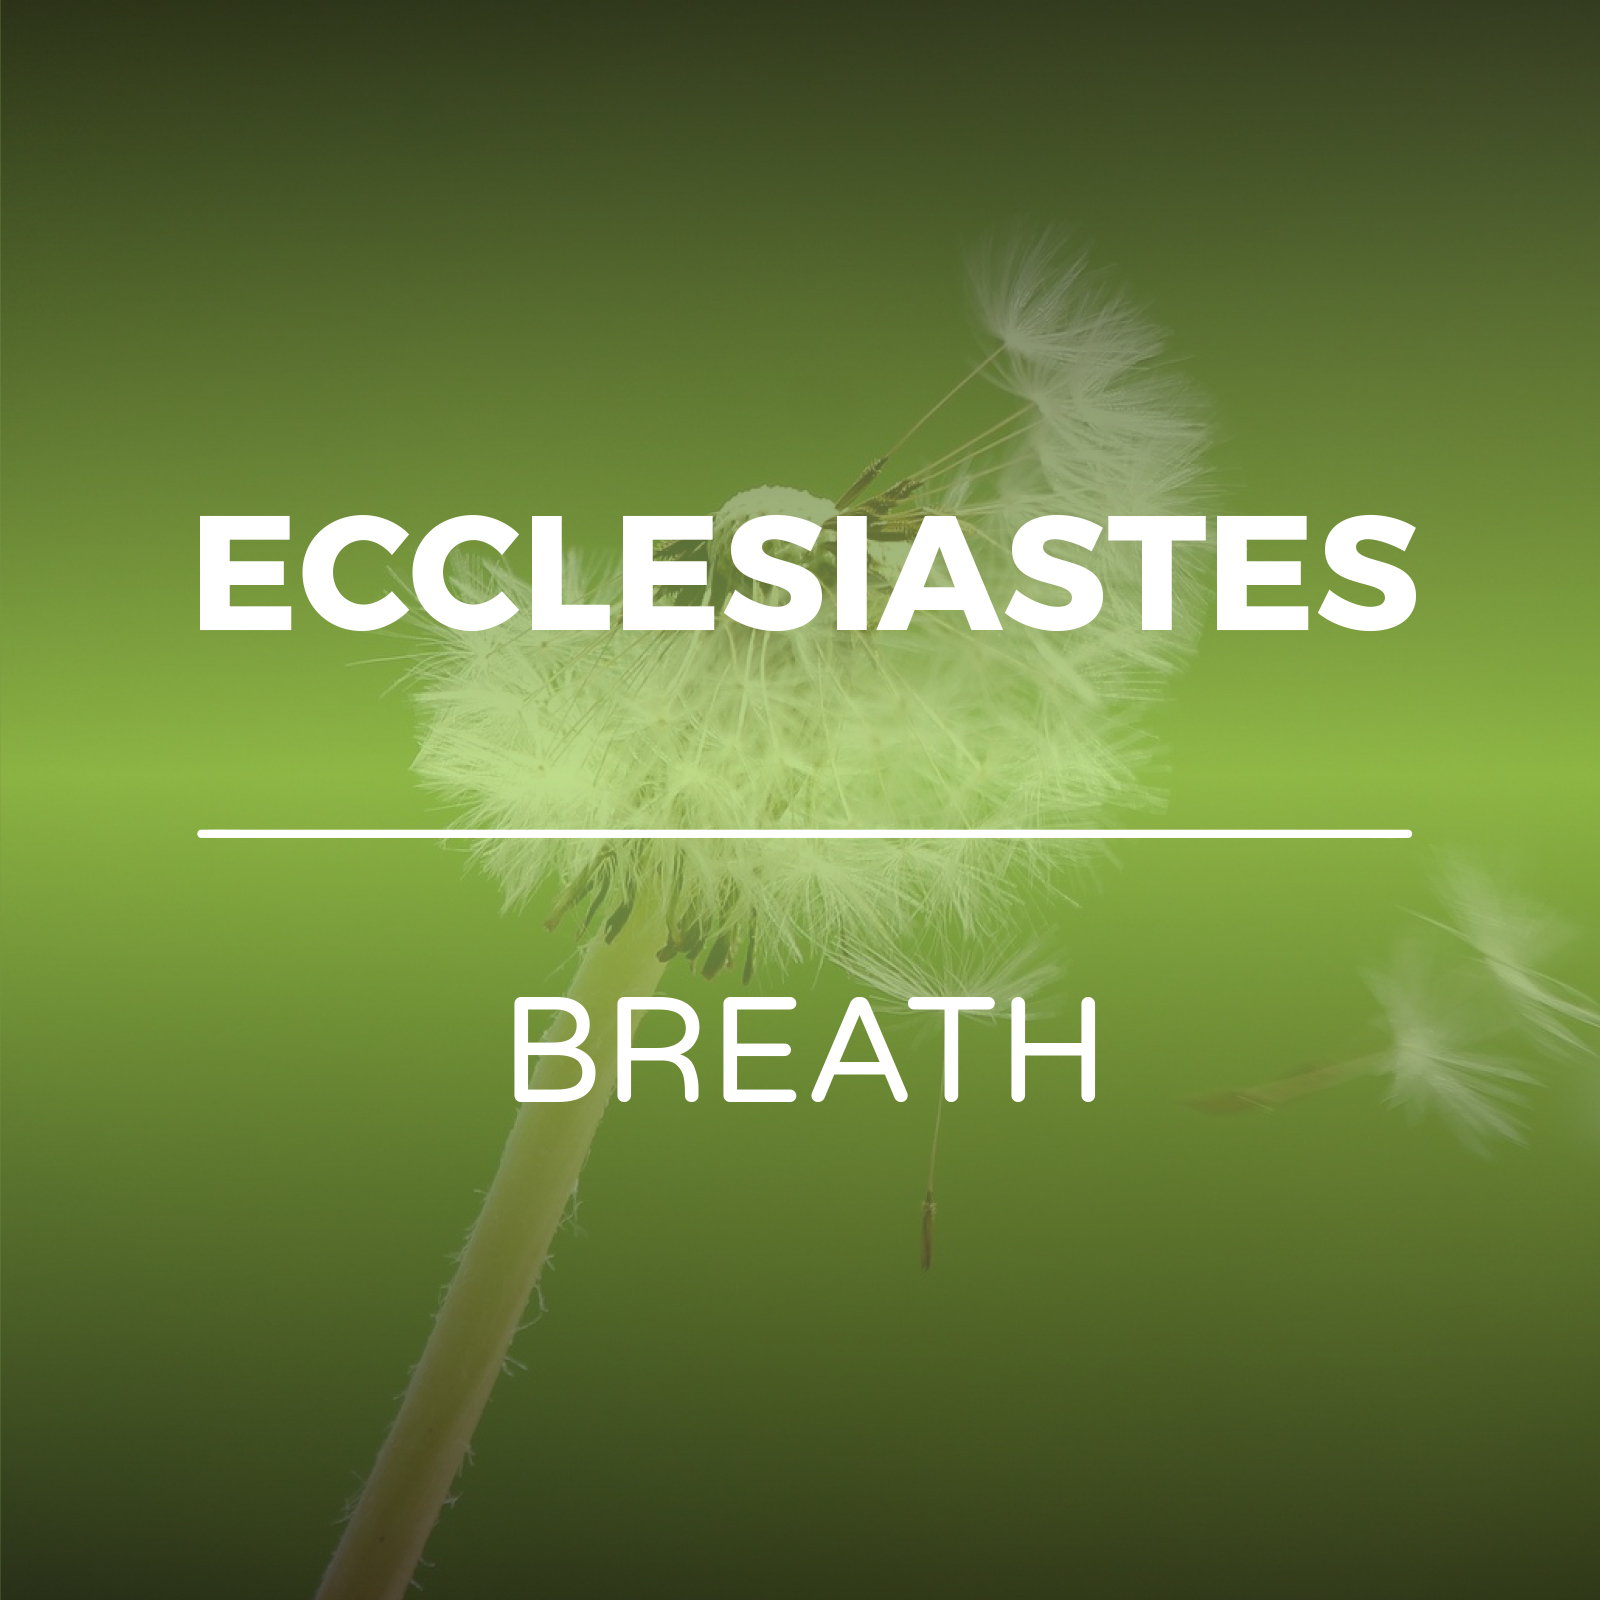 Ecclesiastes - Breath sermon series - Hope Church Huddersfield